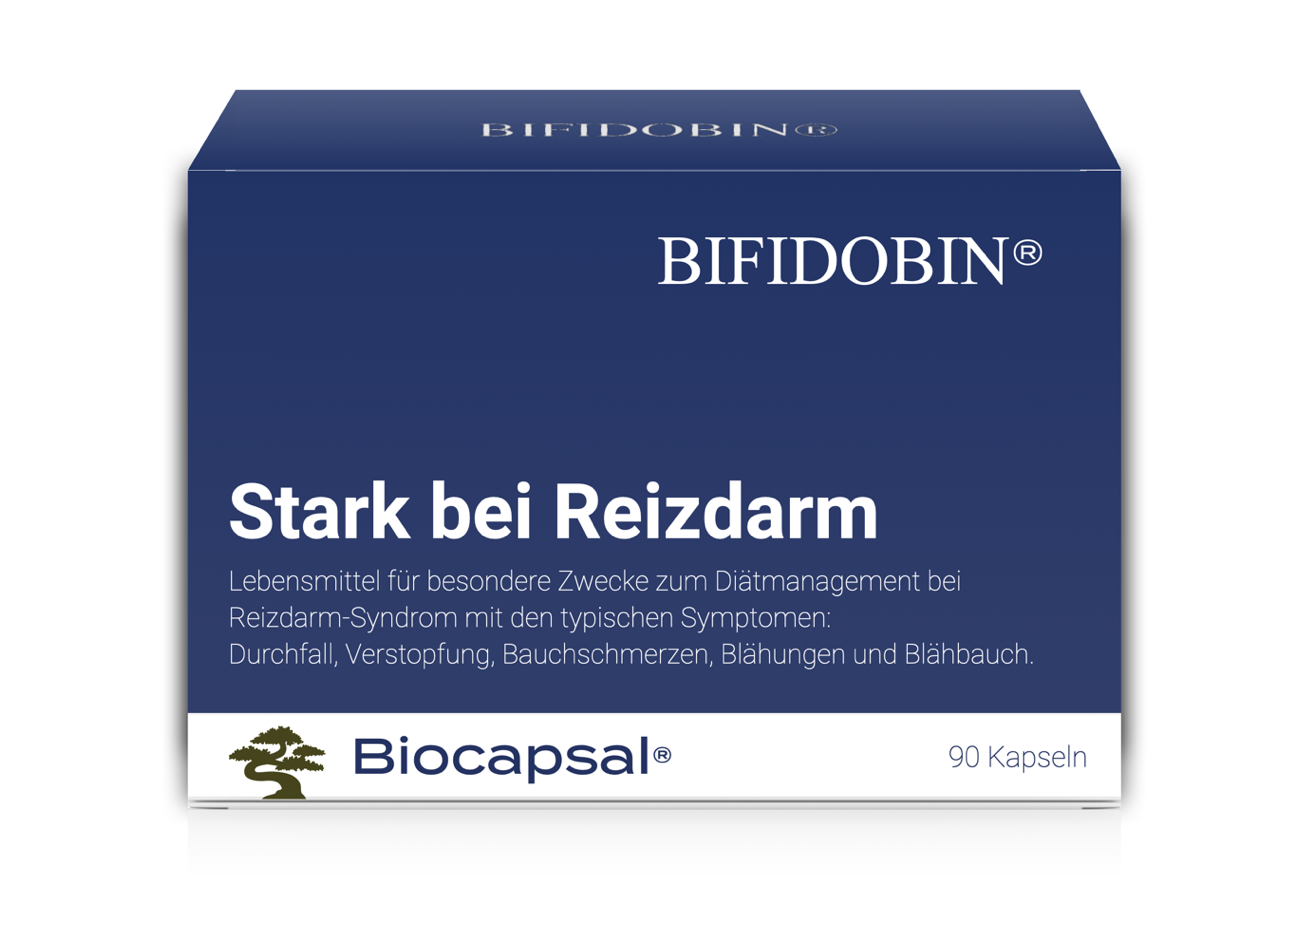 bifidobin im apotheken Warentest